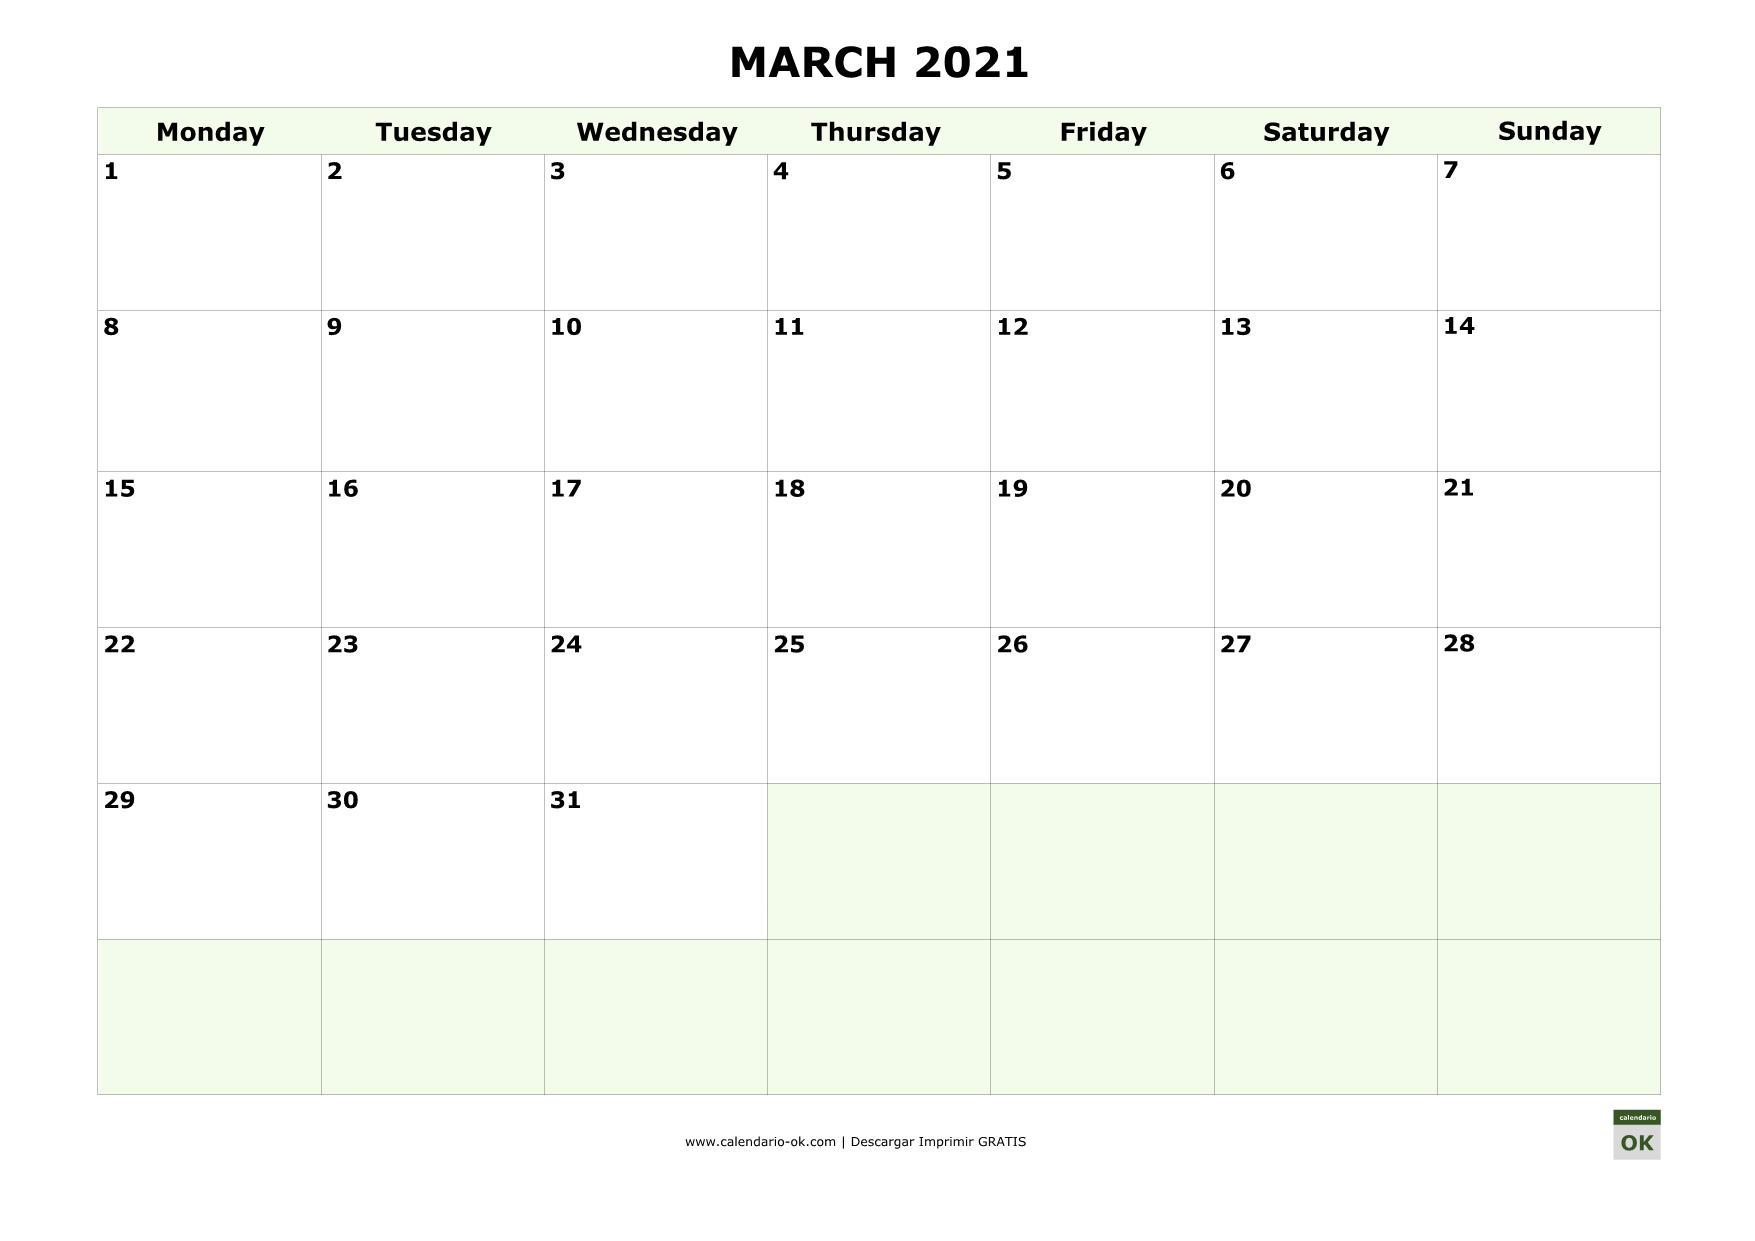 MARZO 2021 calendario en INGLES